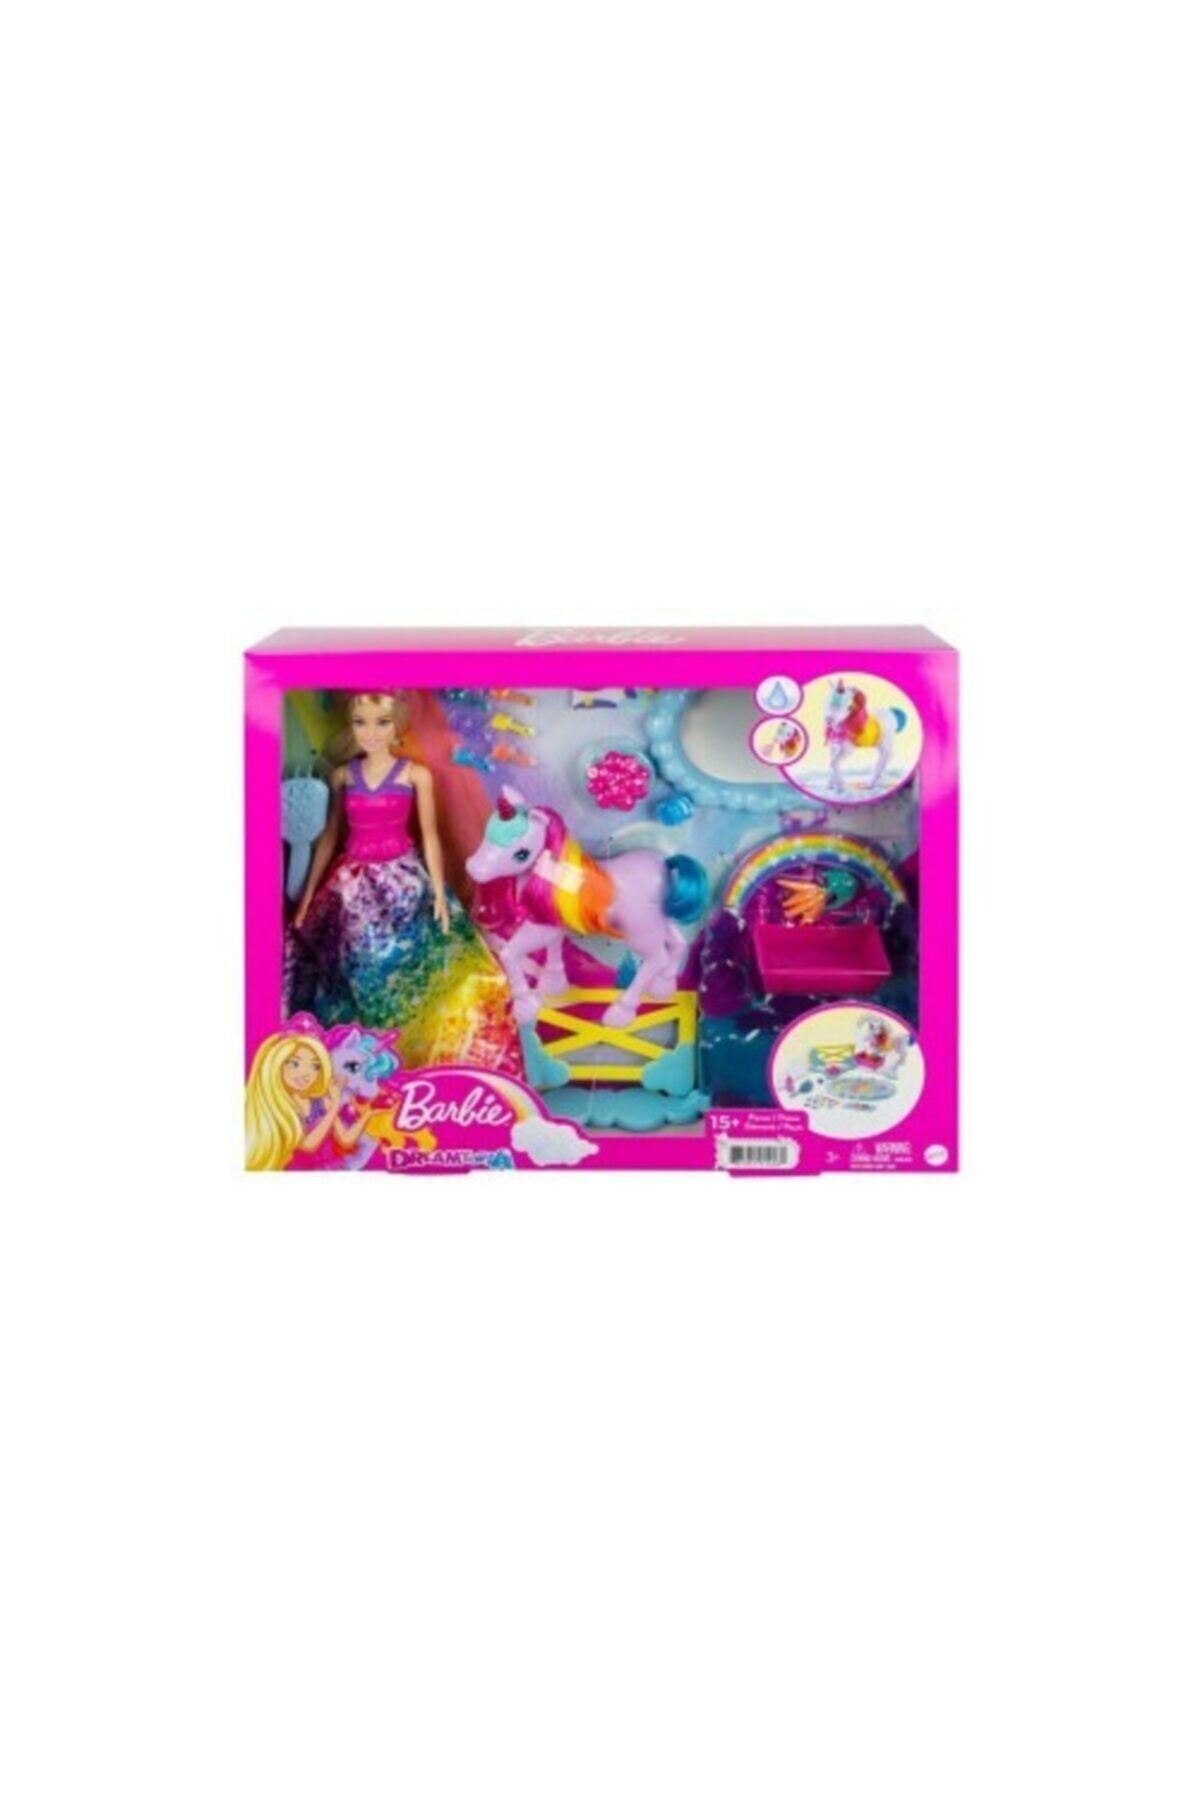 Barbie Dreamtopia Bebek ve Tek Boynuzlu At Gtg01 Lisanslı Ürün